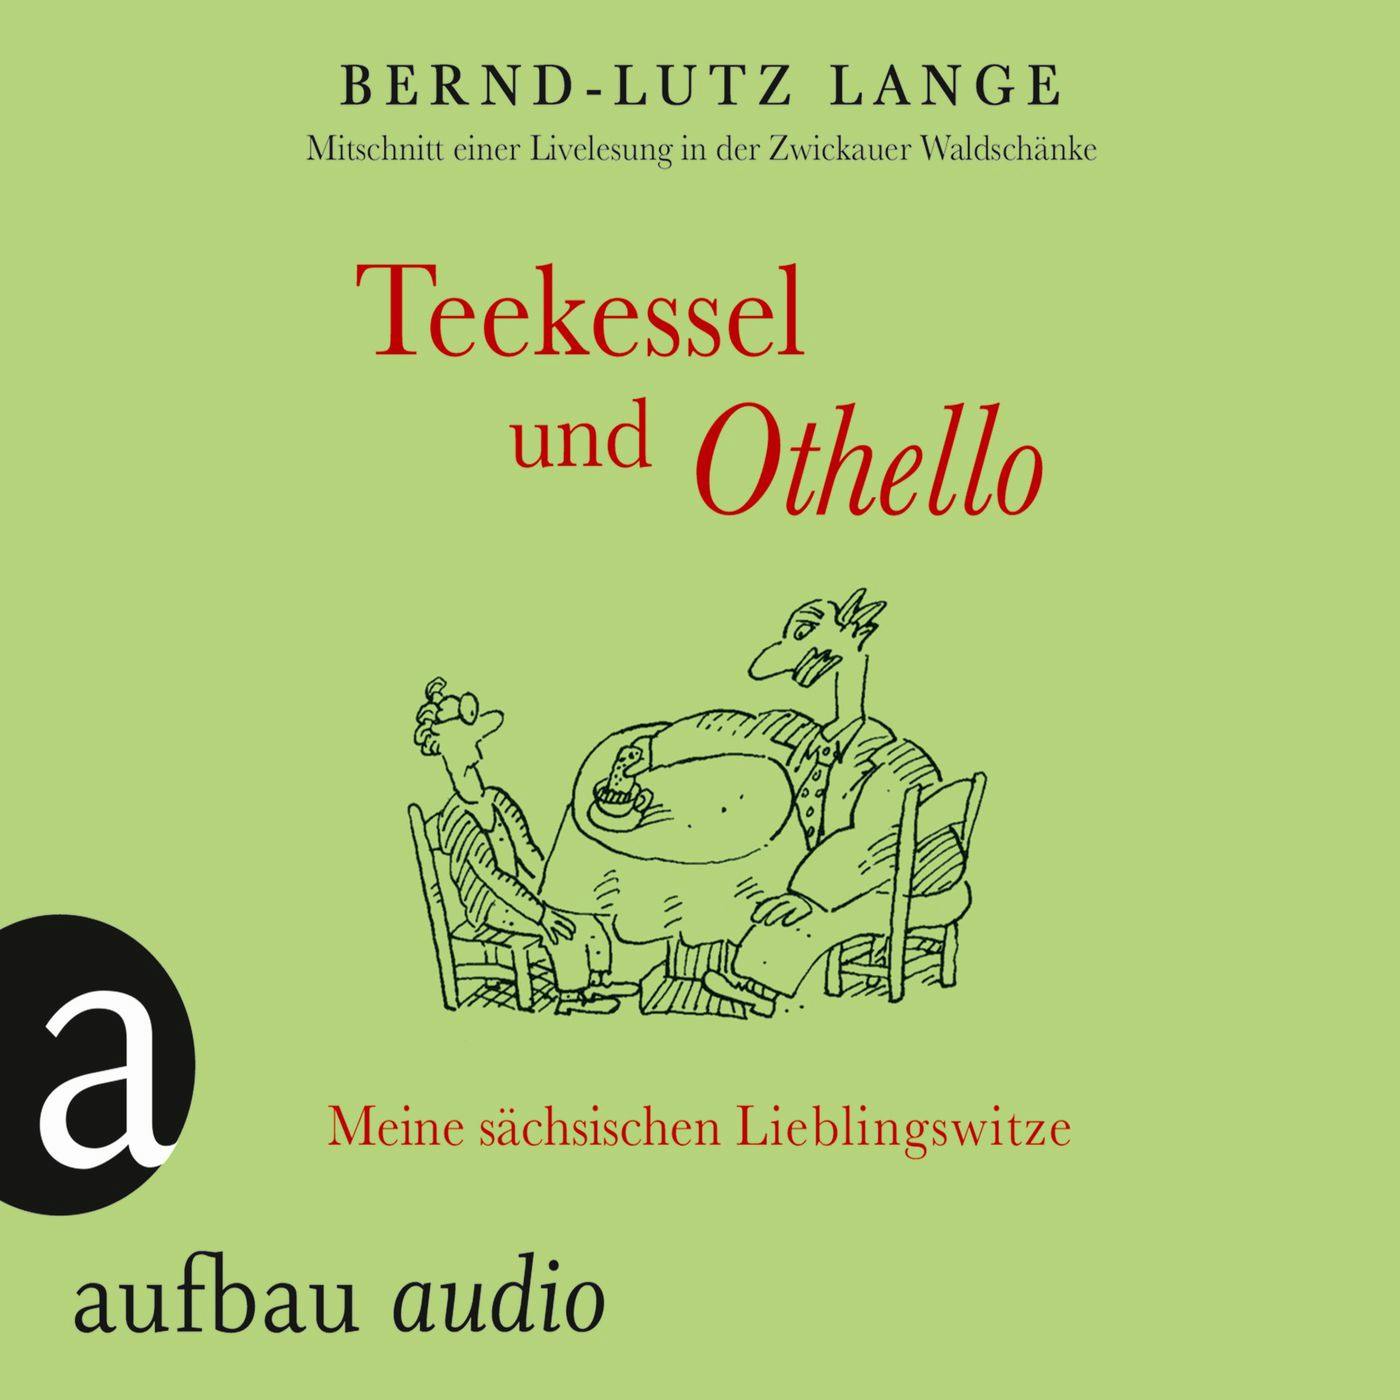 Teekessel und Othello - Meine sächsischen Lieblingswitze - Bernd-Lutz Lange